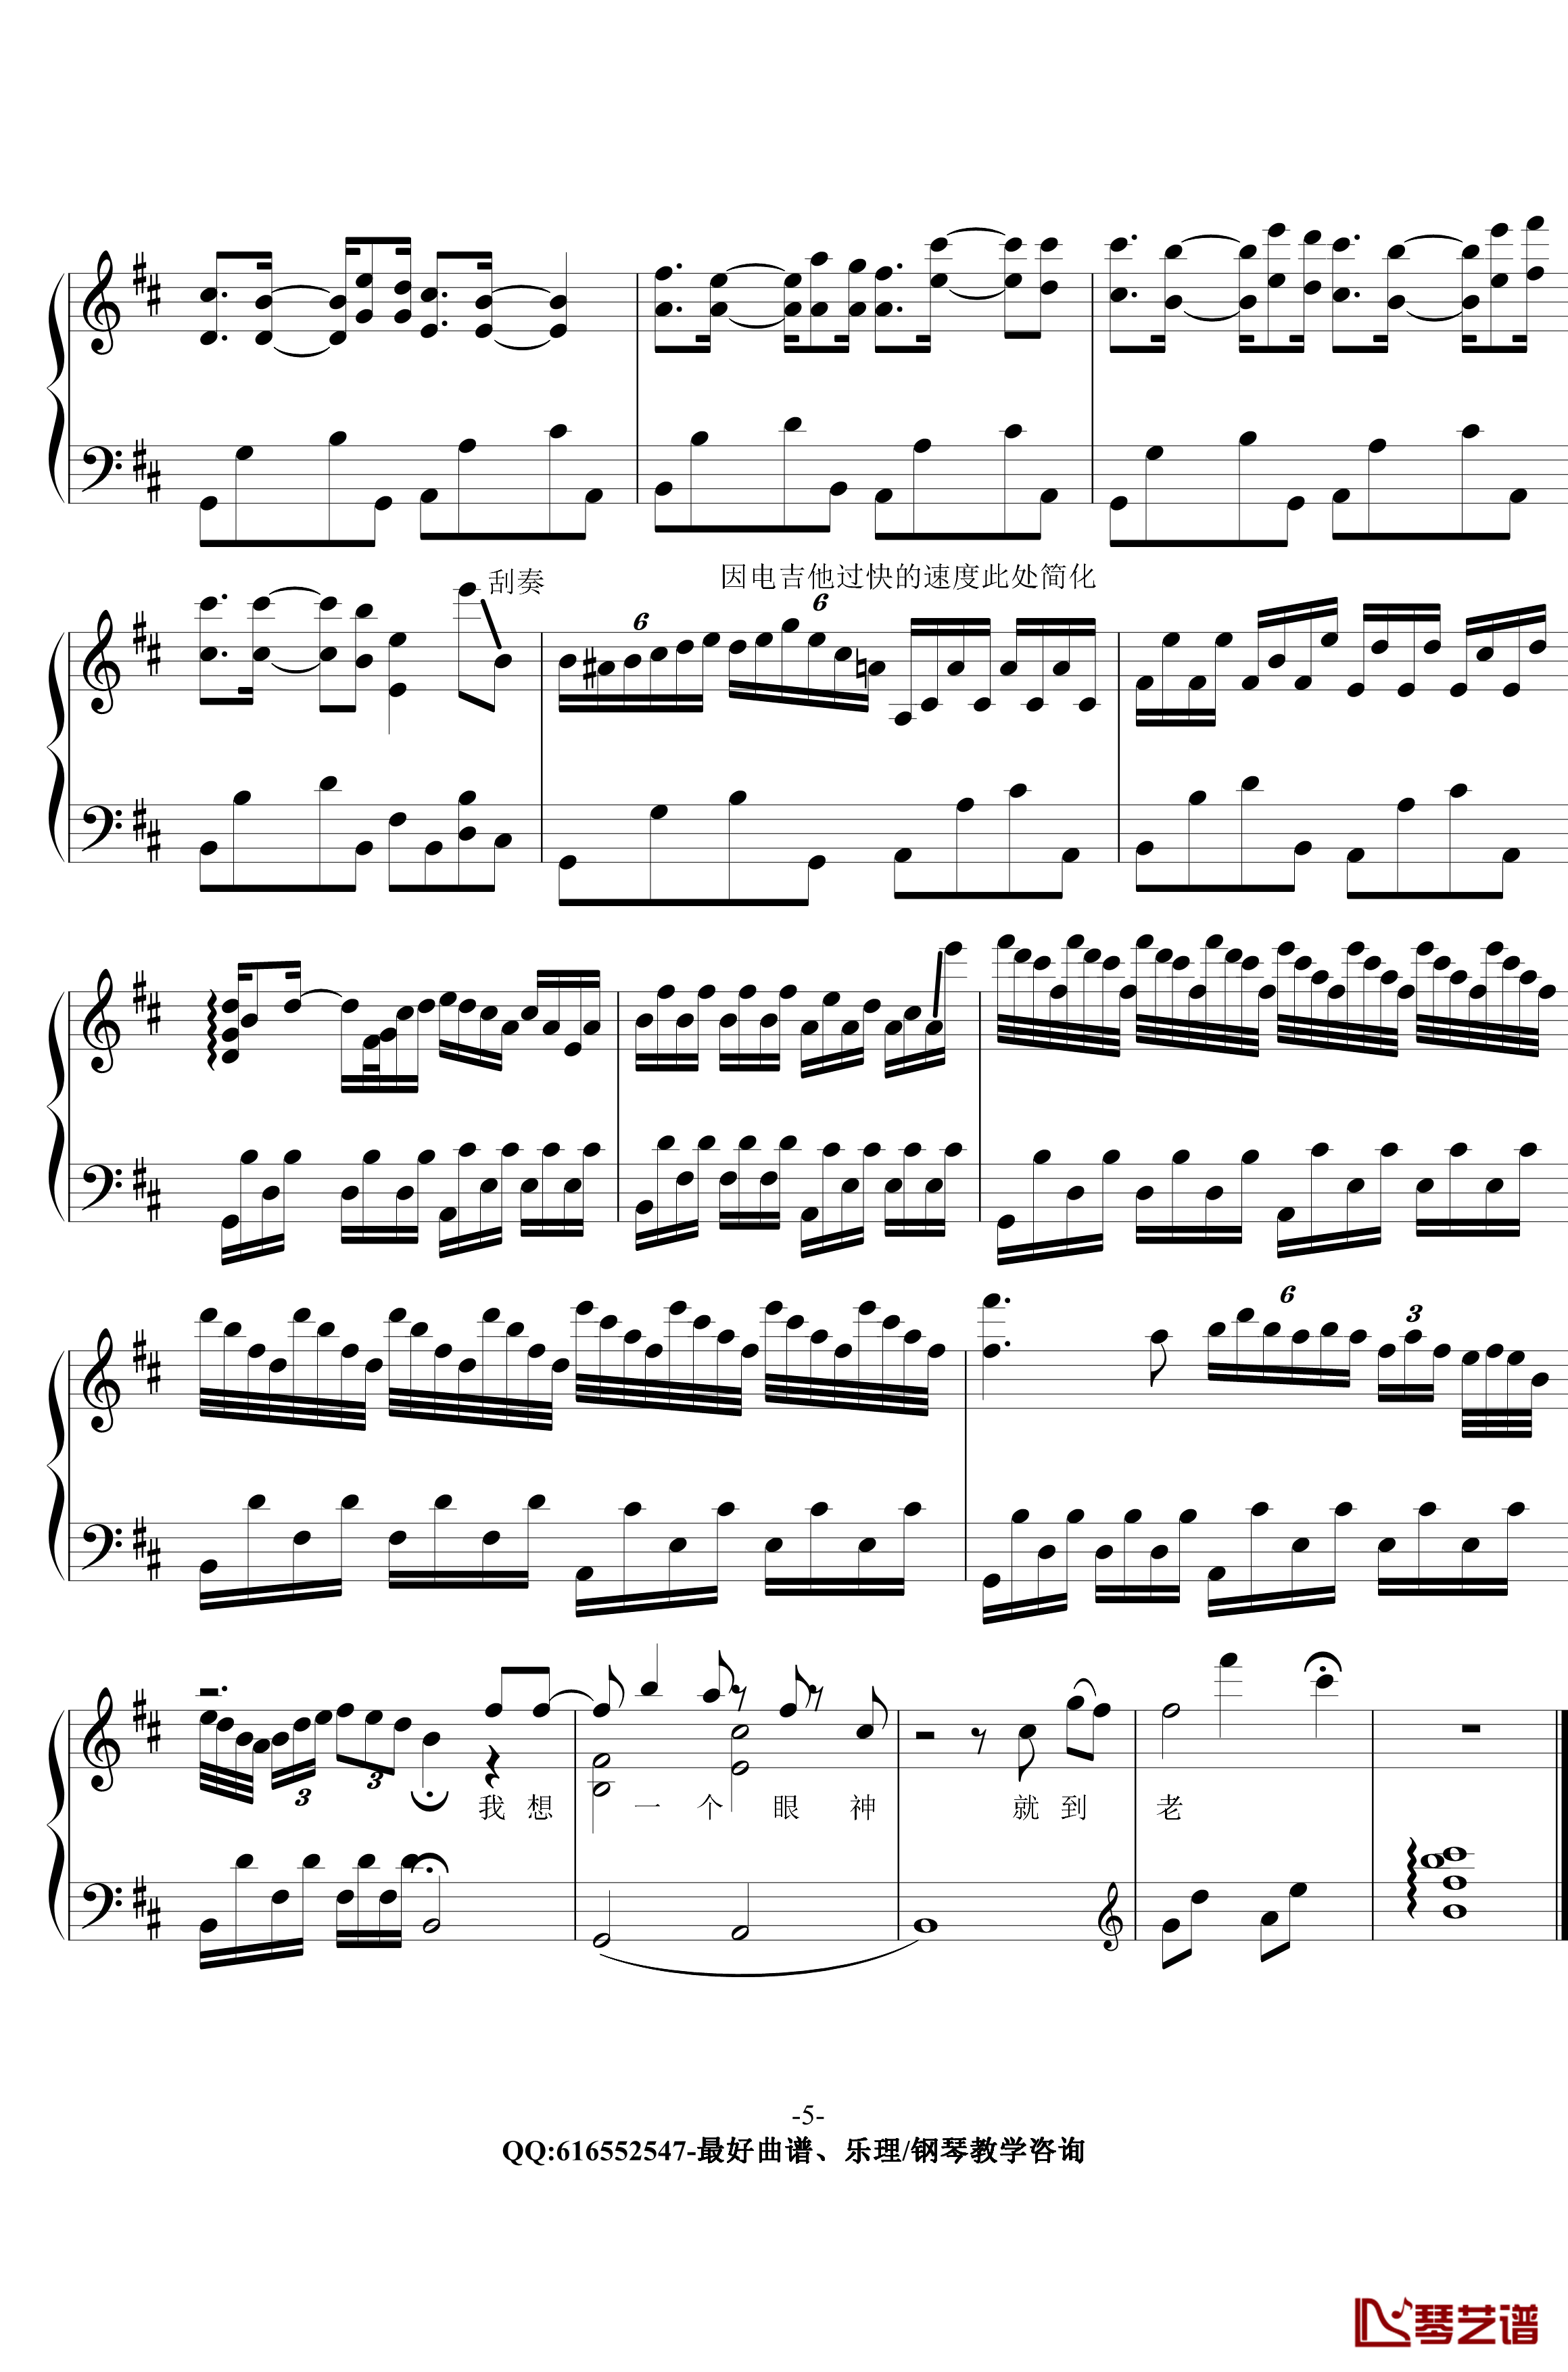 撒野钢琴谱-金老师原声独奏版180104-凯瑟喵5